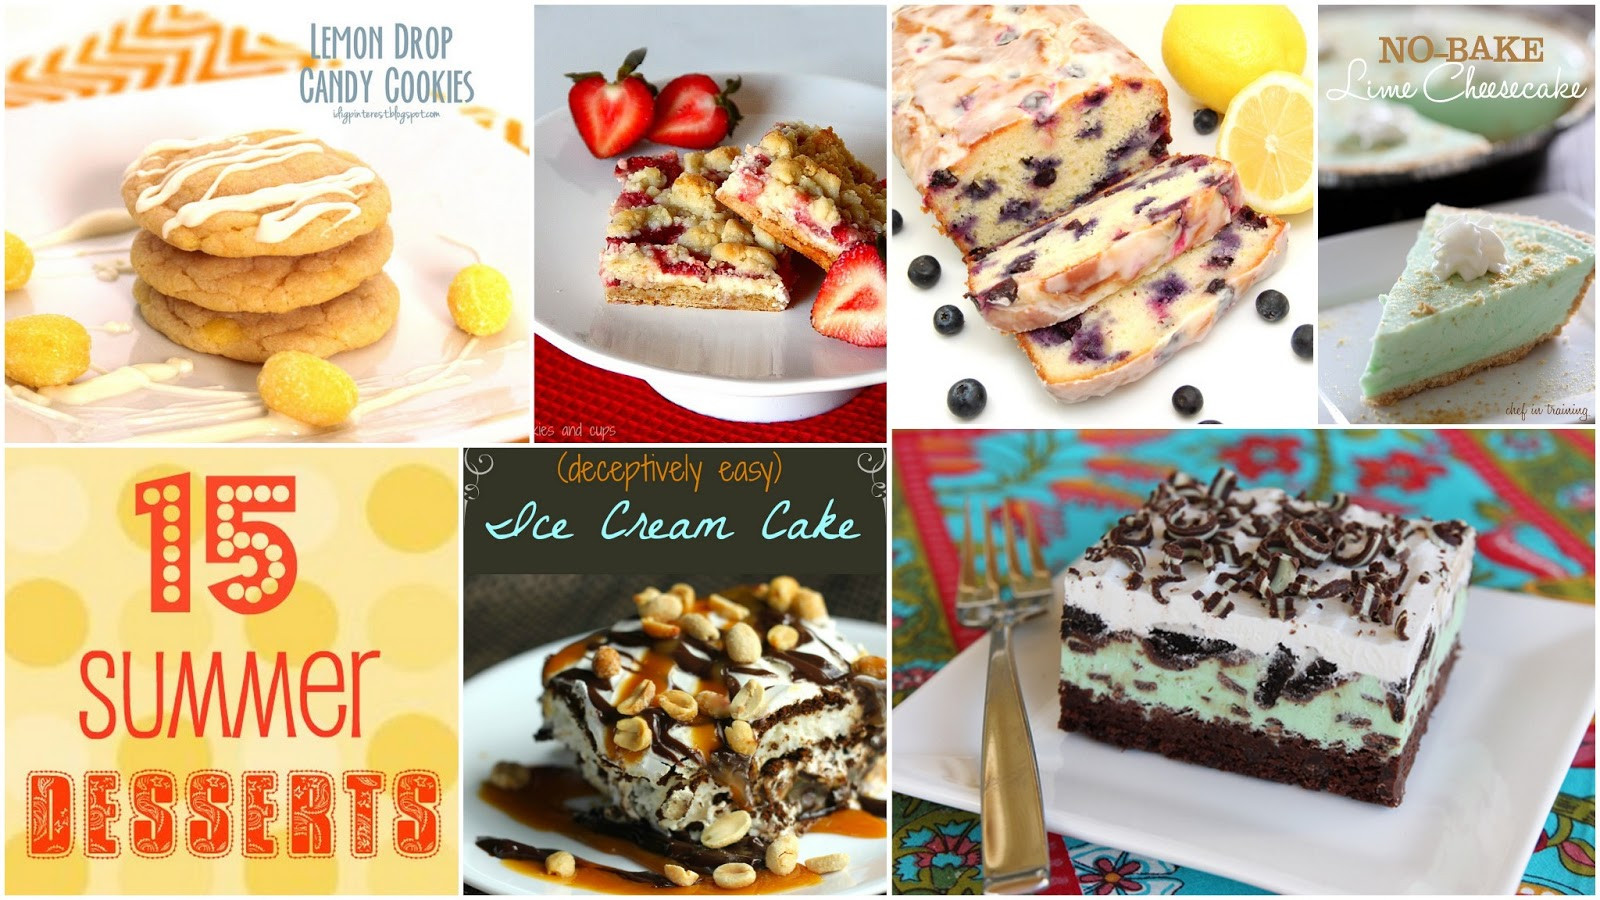 Summer Desserts Pinterest
 15 Mouthwatering Summer Desserts I Dig Pinterest